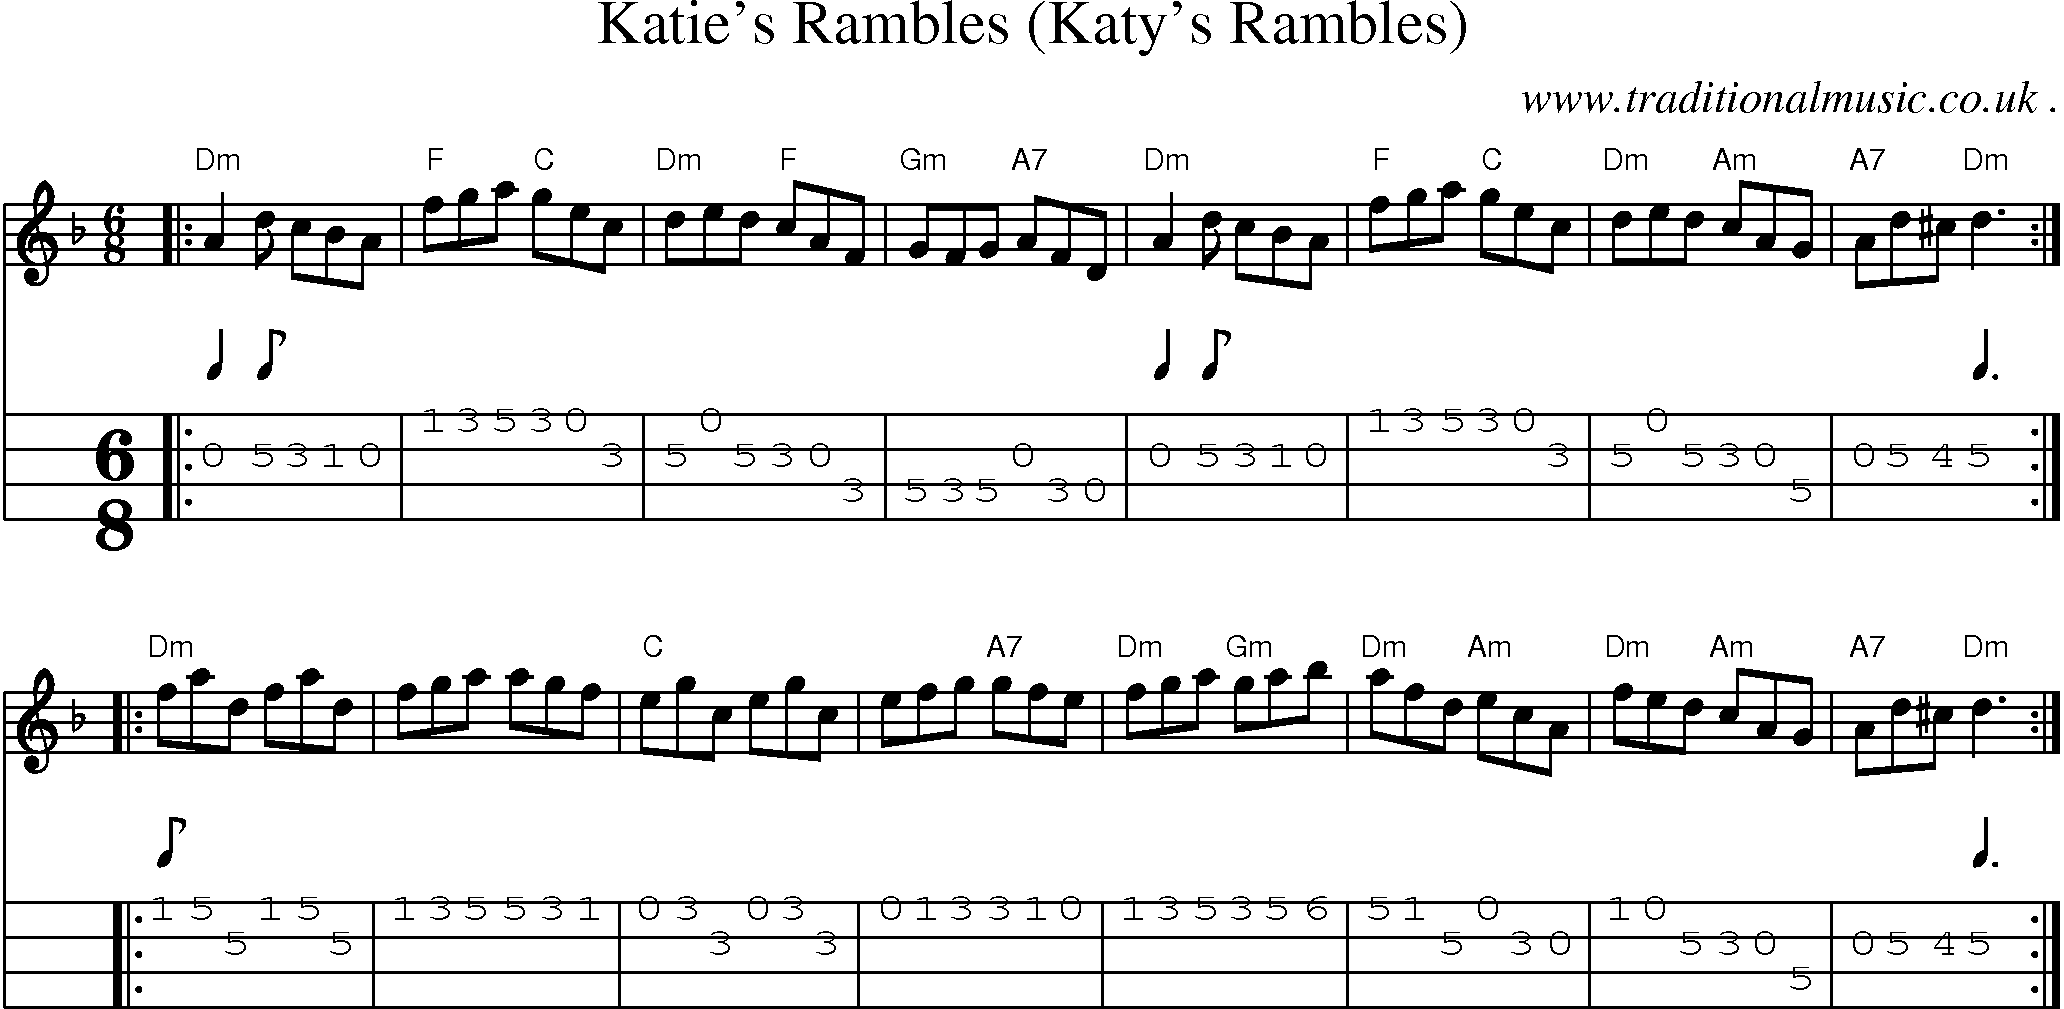 Sheet-music  score, Chords and Mandolin Tabs for Katies Rambles Katys Rambles